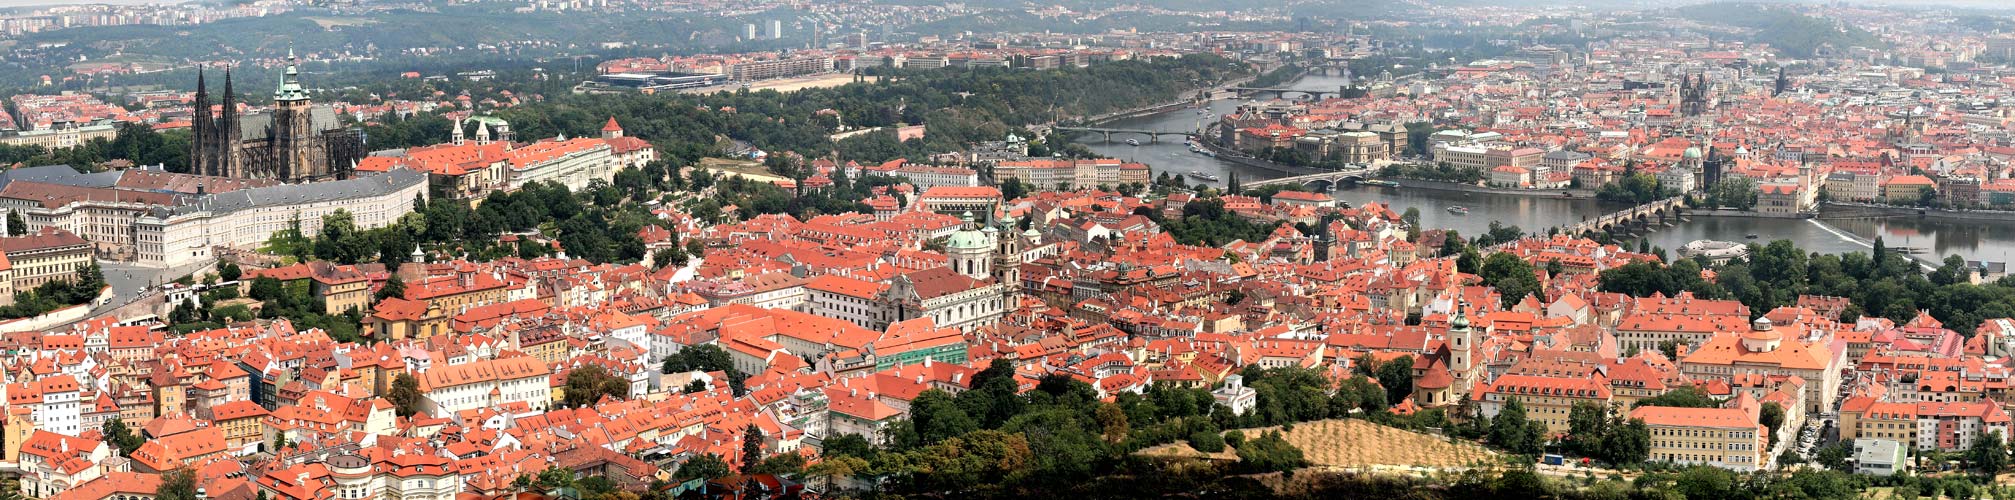 Prag, Praha, Prague - Panorama